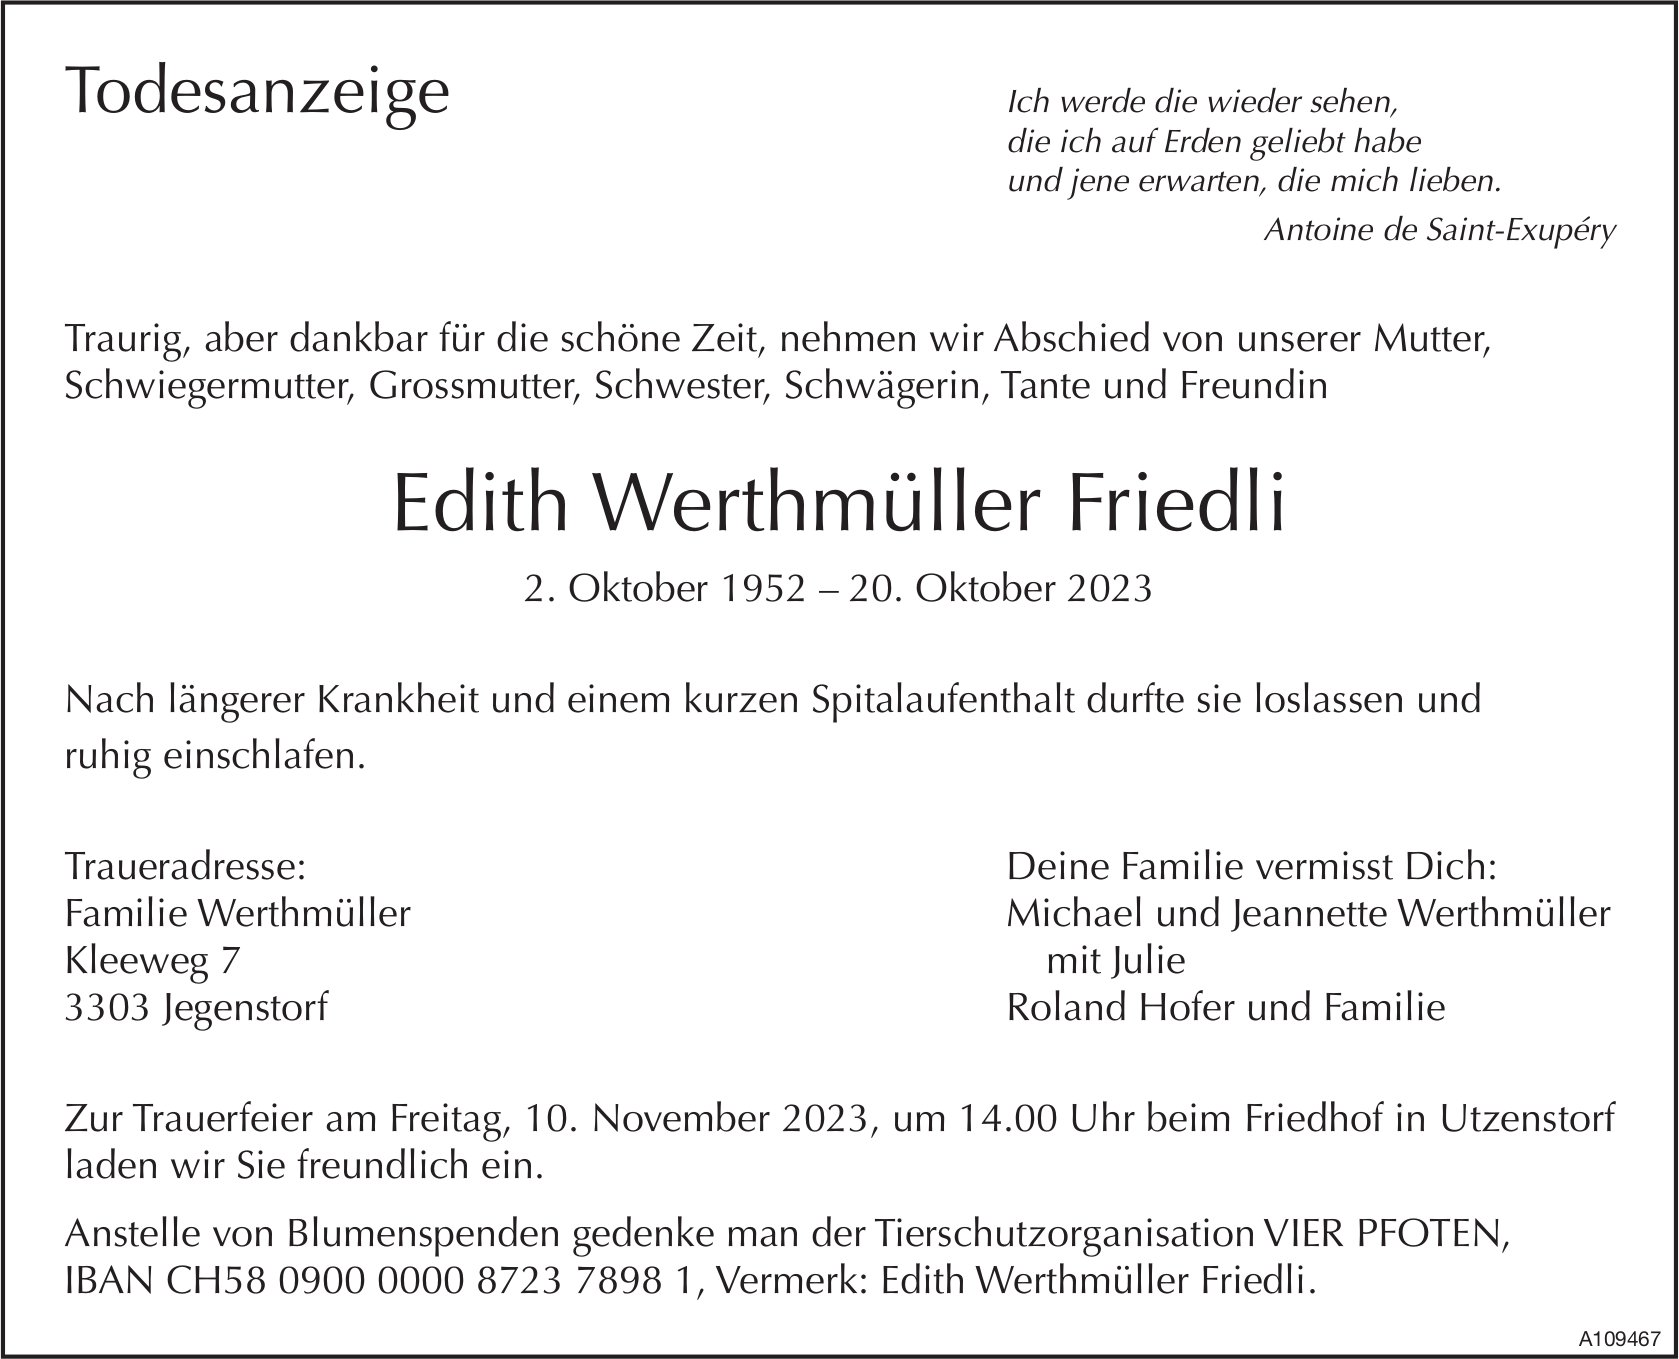 Edith Werthmüller Friedli, Oktober 2023 / TA